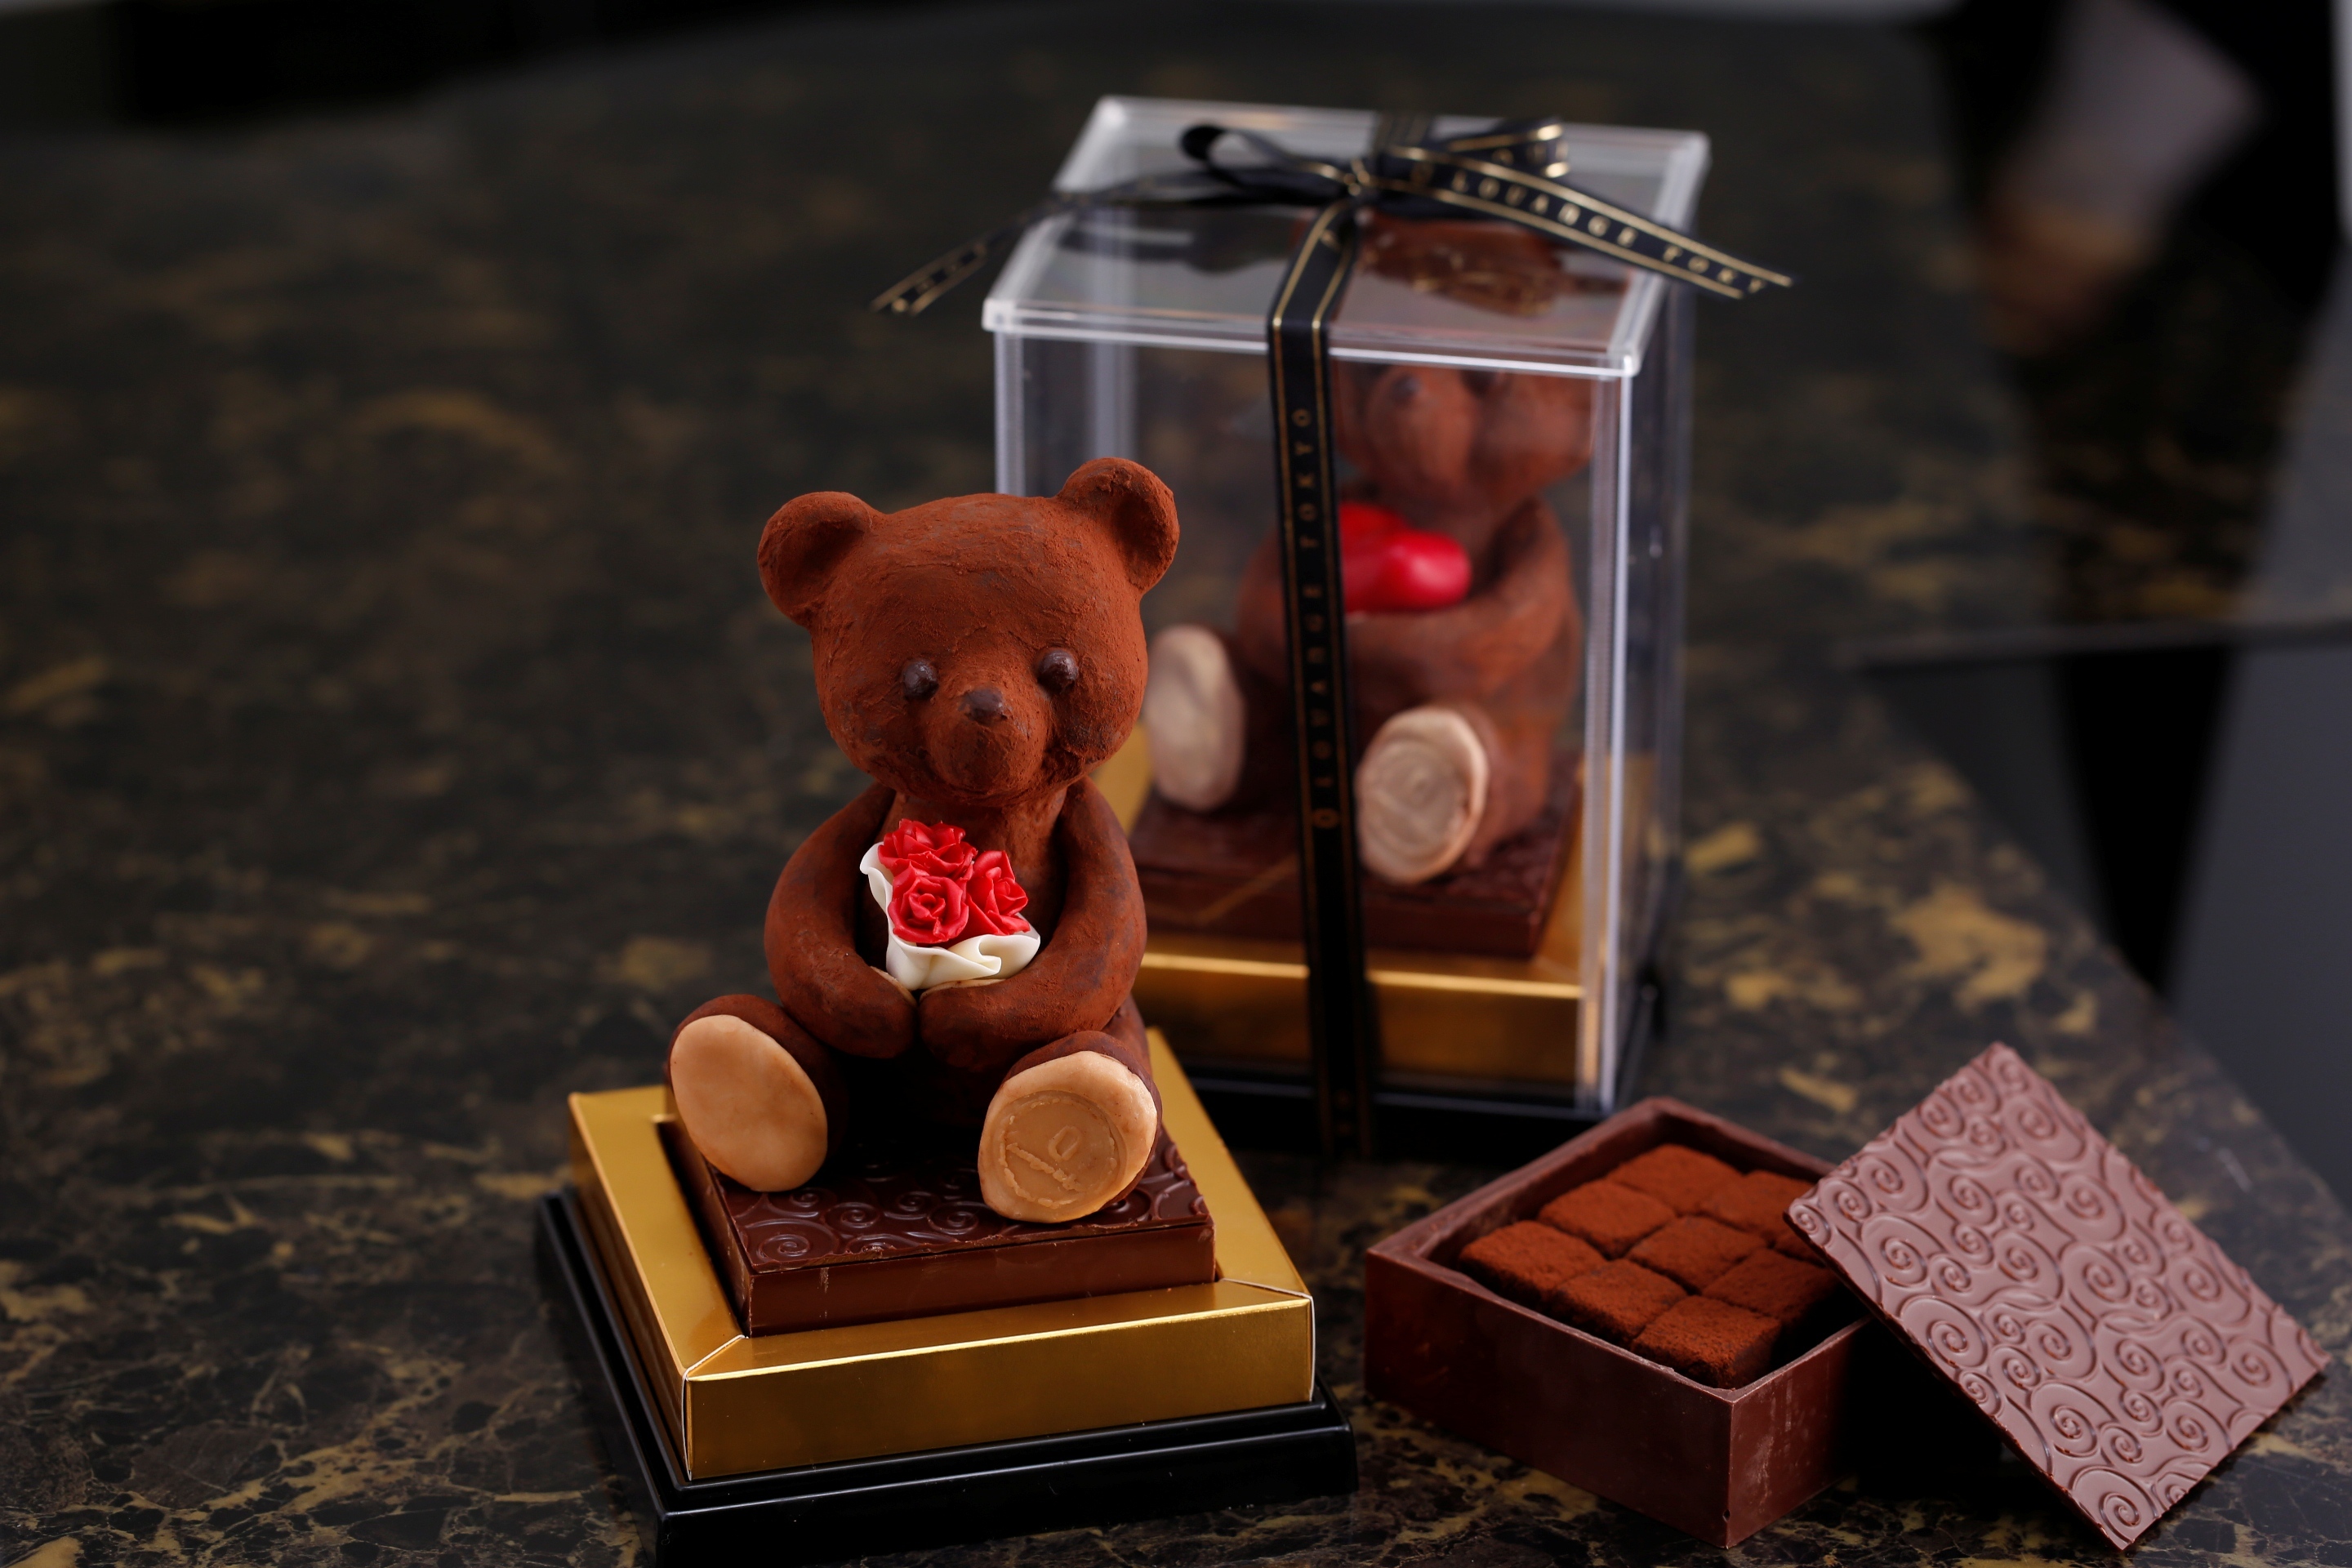 Louange Tokyo Valentine 16 愛する人に想いを込めて贈りたい アートのようなチョコレートを2月1日に限定発売 株式会社louange Tokyoのプレスリリース